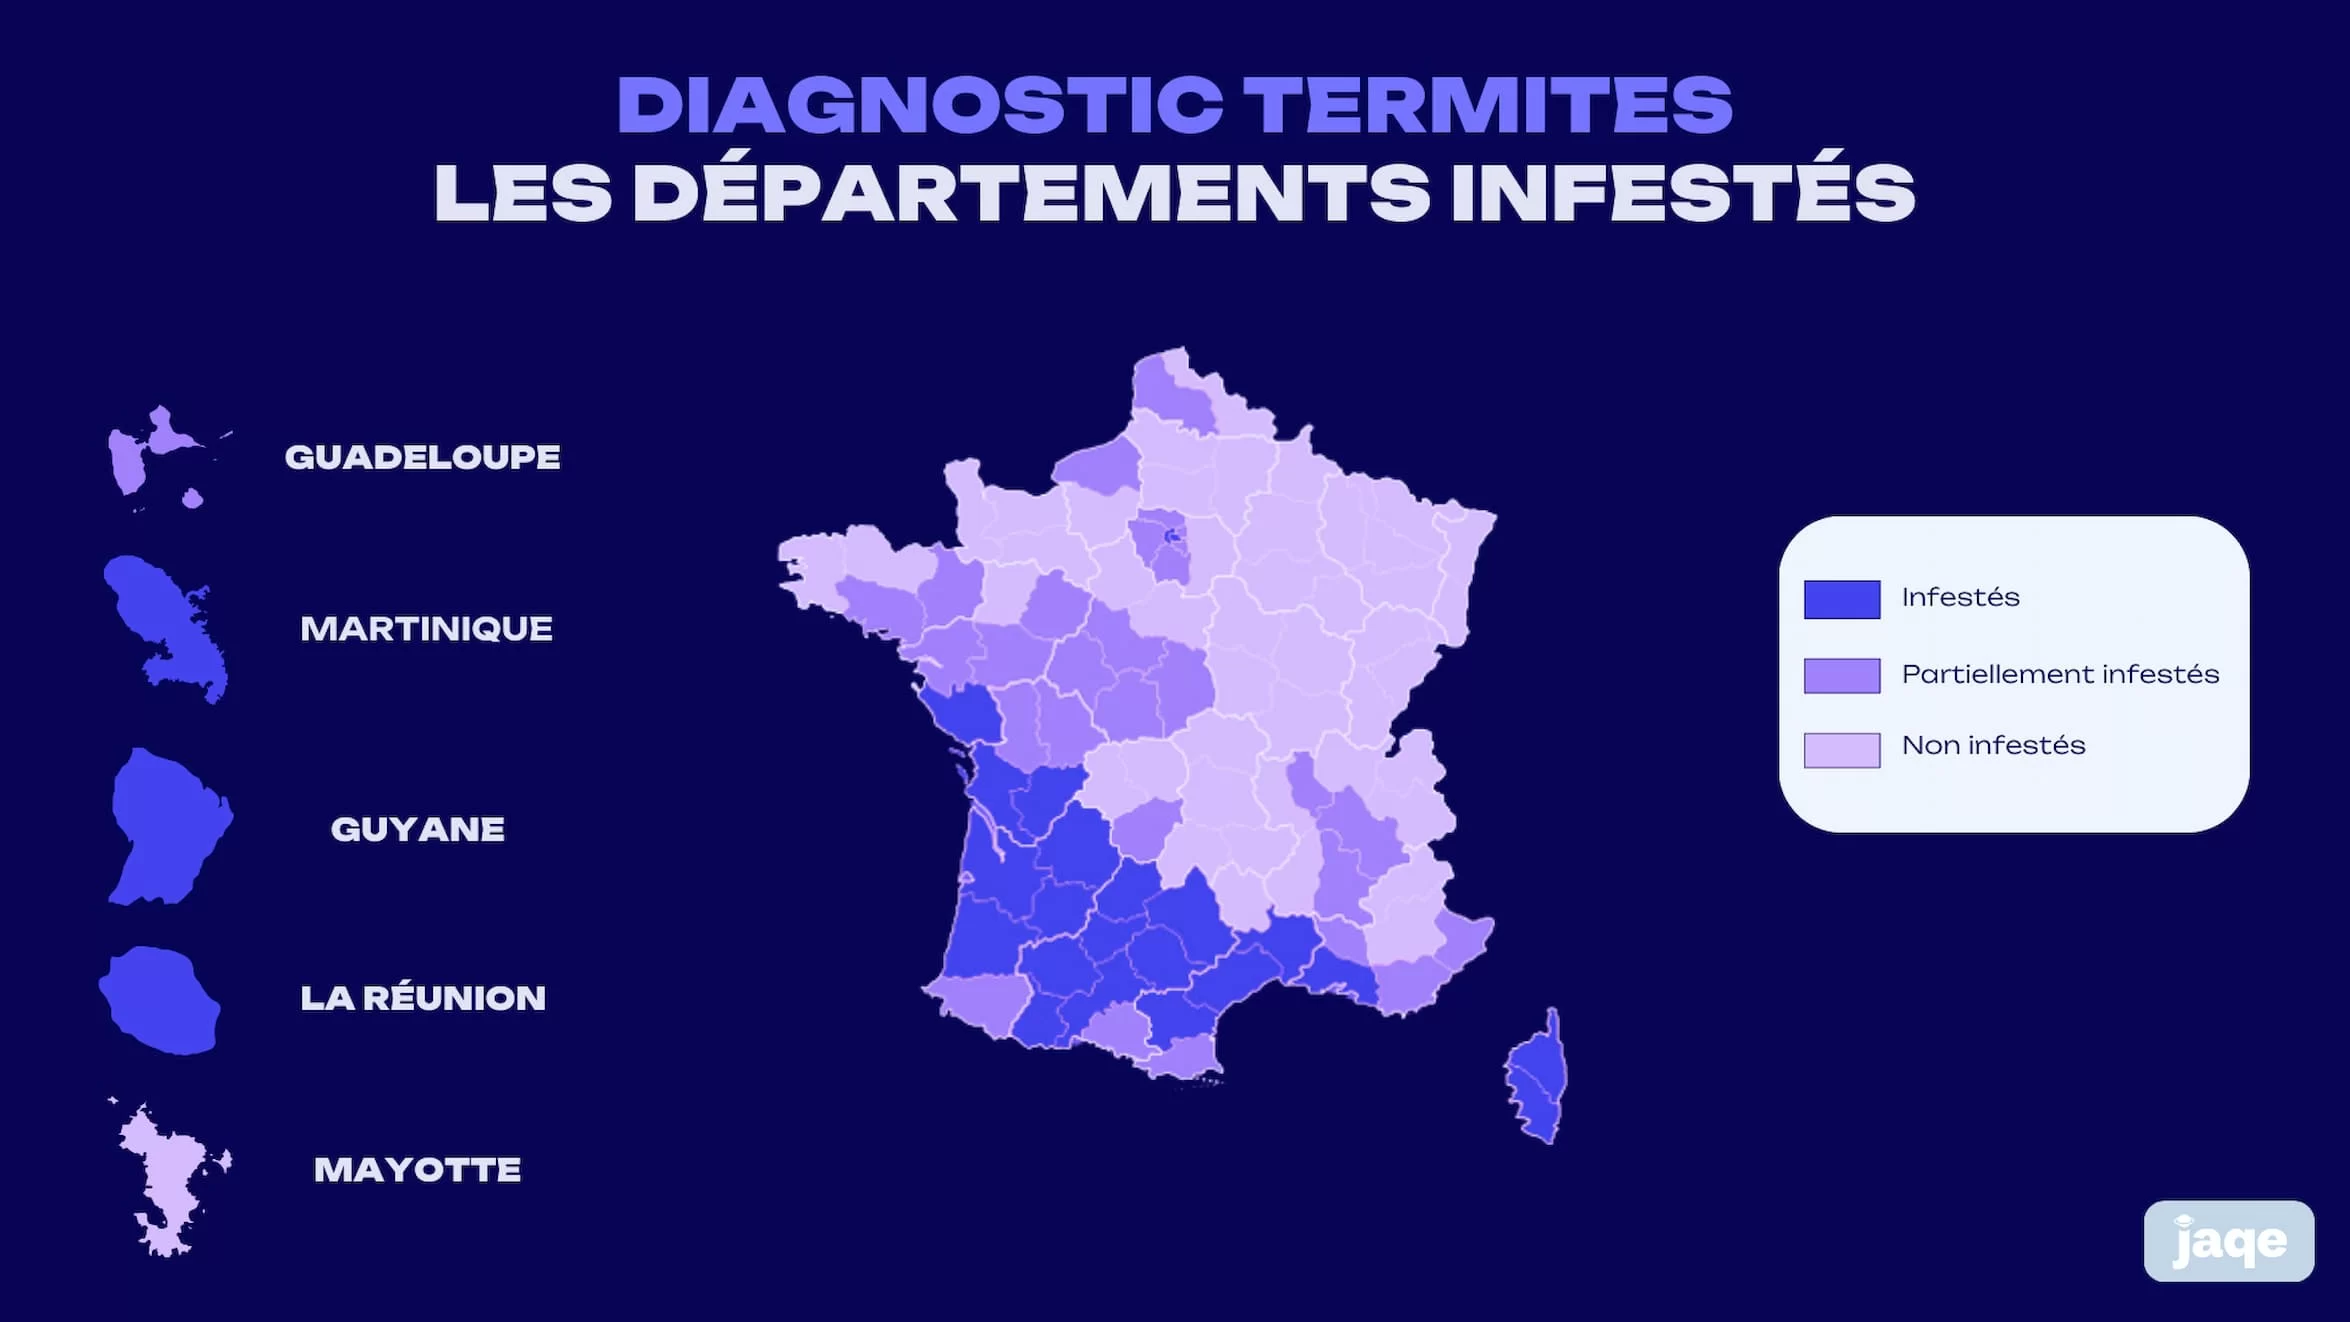 les départements infestés par les termites